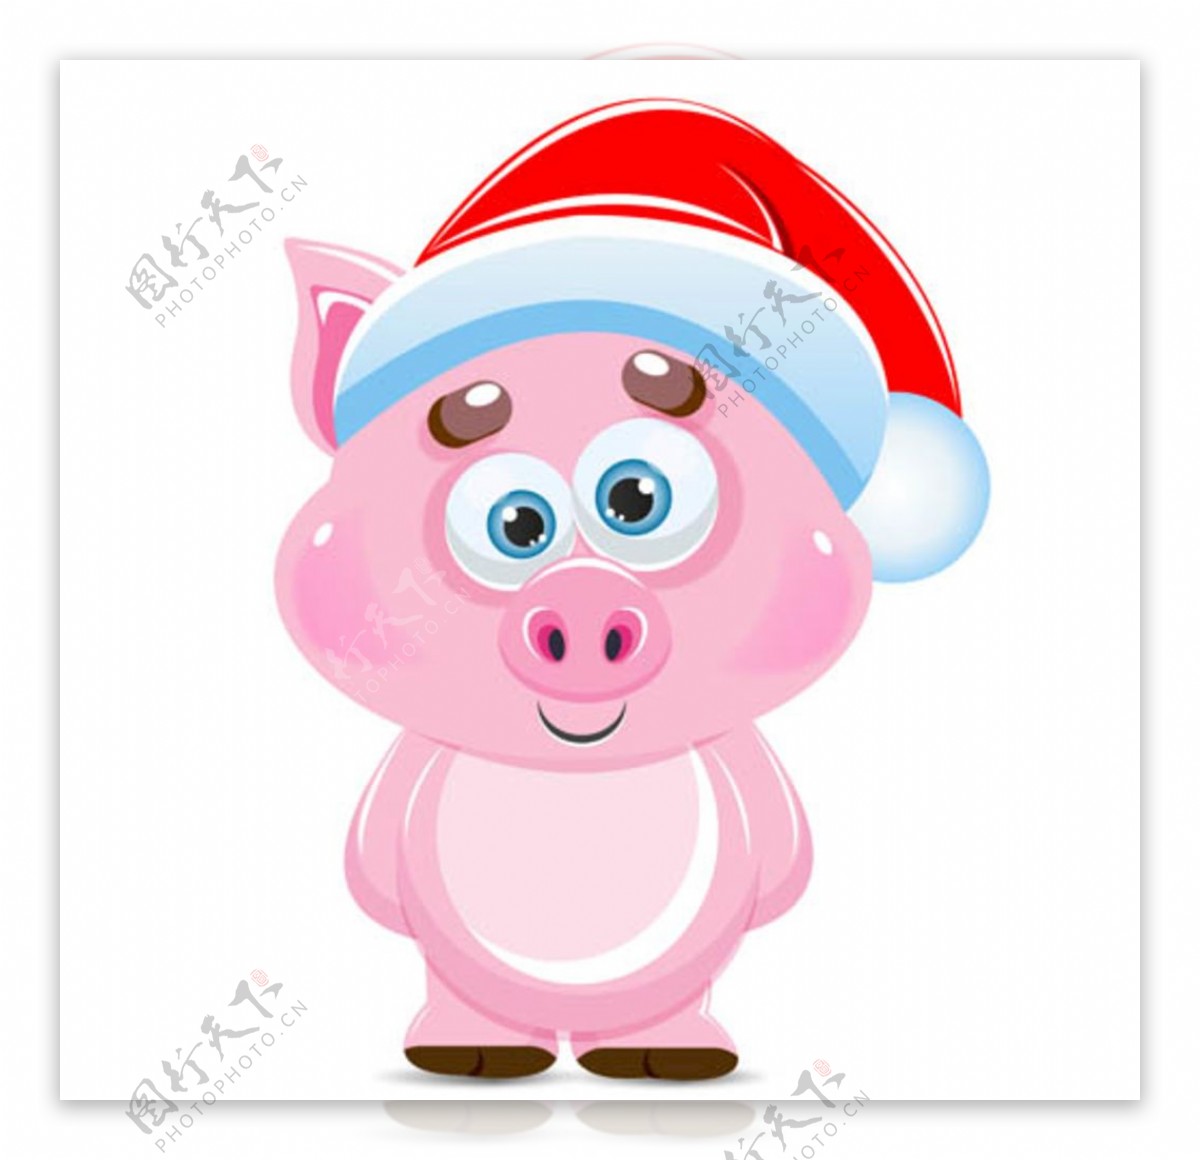 戴圣诞帽的粉红小猪